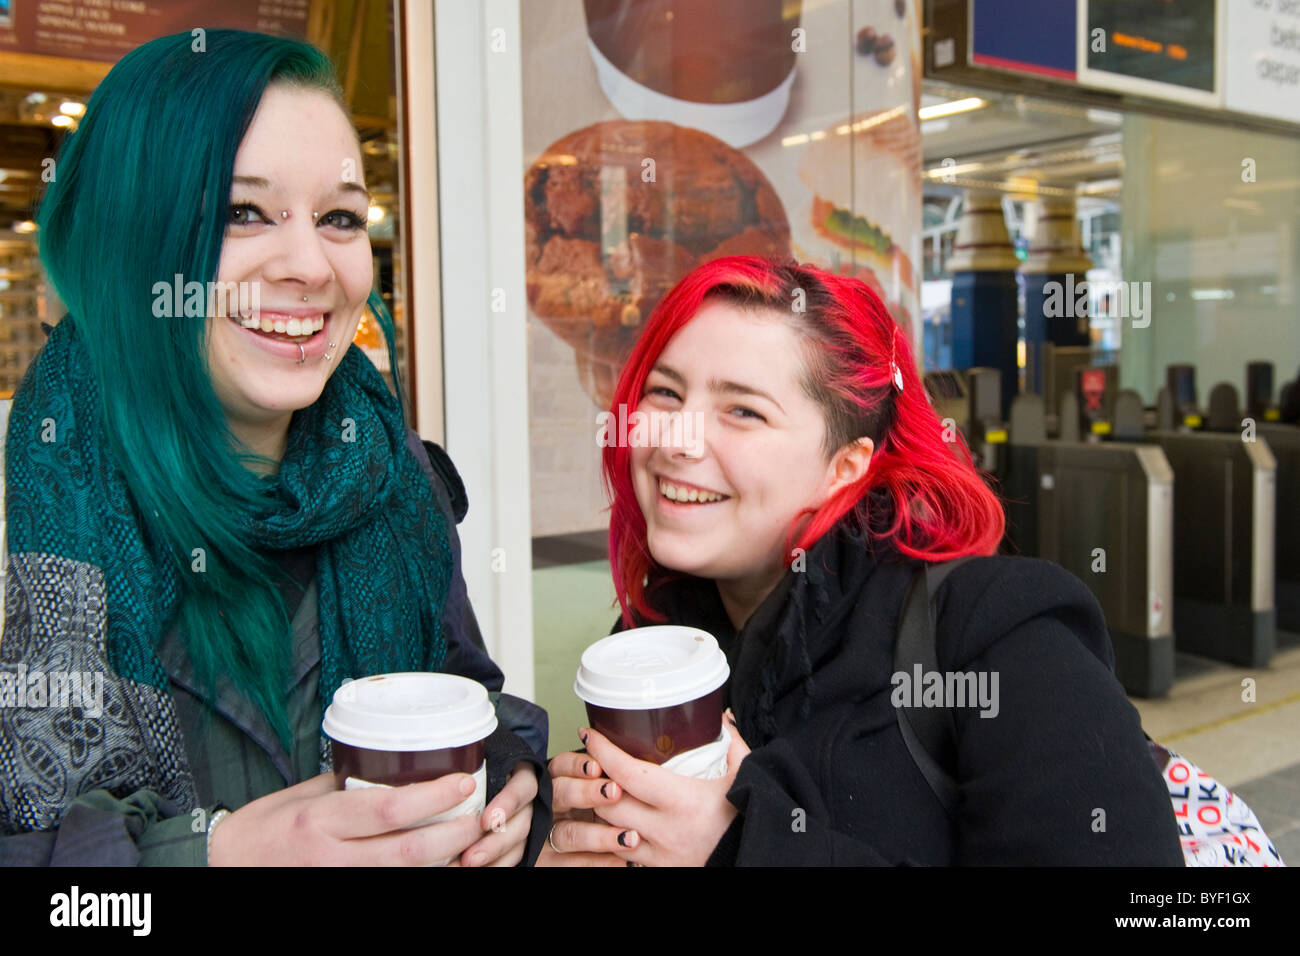 La gare de Liverpool Street Station deux jolies jeunes filles femmes mesdames vert & rouge à lèvres piercing nez cheveux bouche tasses à café smiling rire heureux Banque D'Images